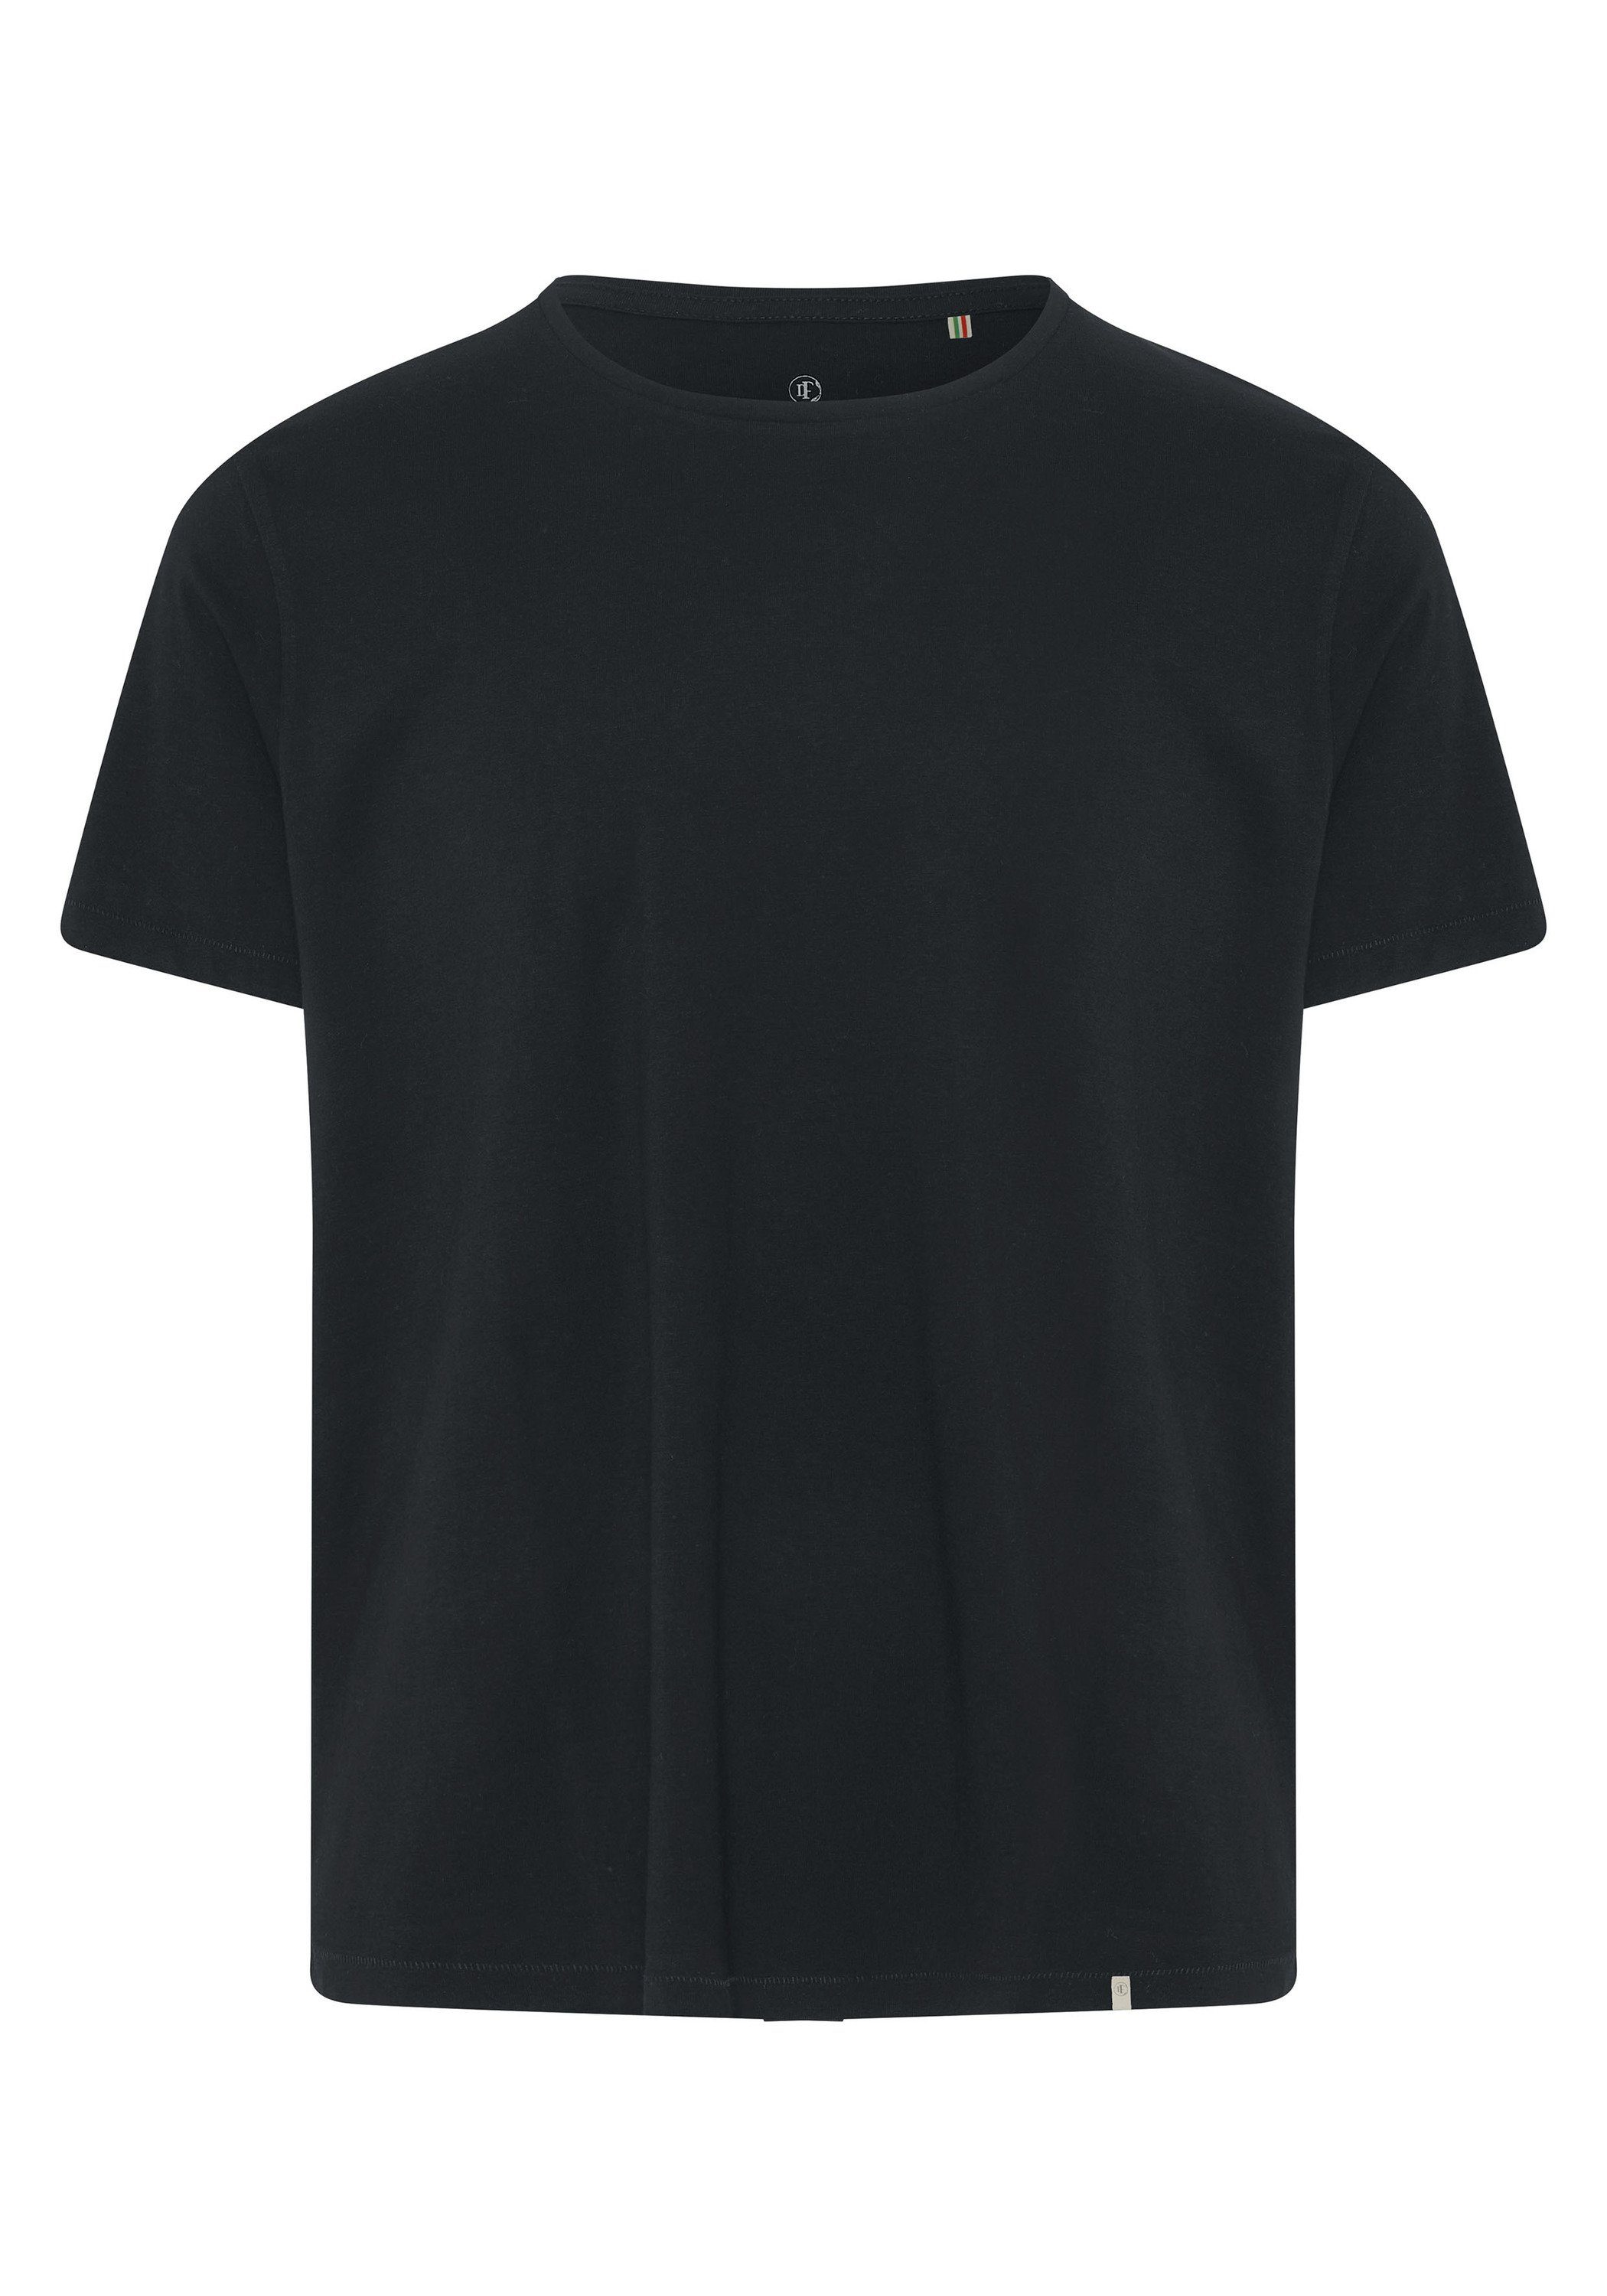 Detto Fatto T-Shirt mit Rundhalsausschnitt Black 90